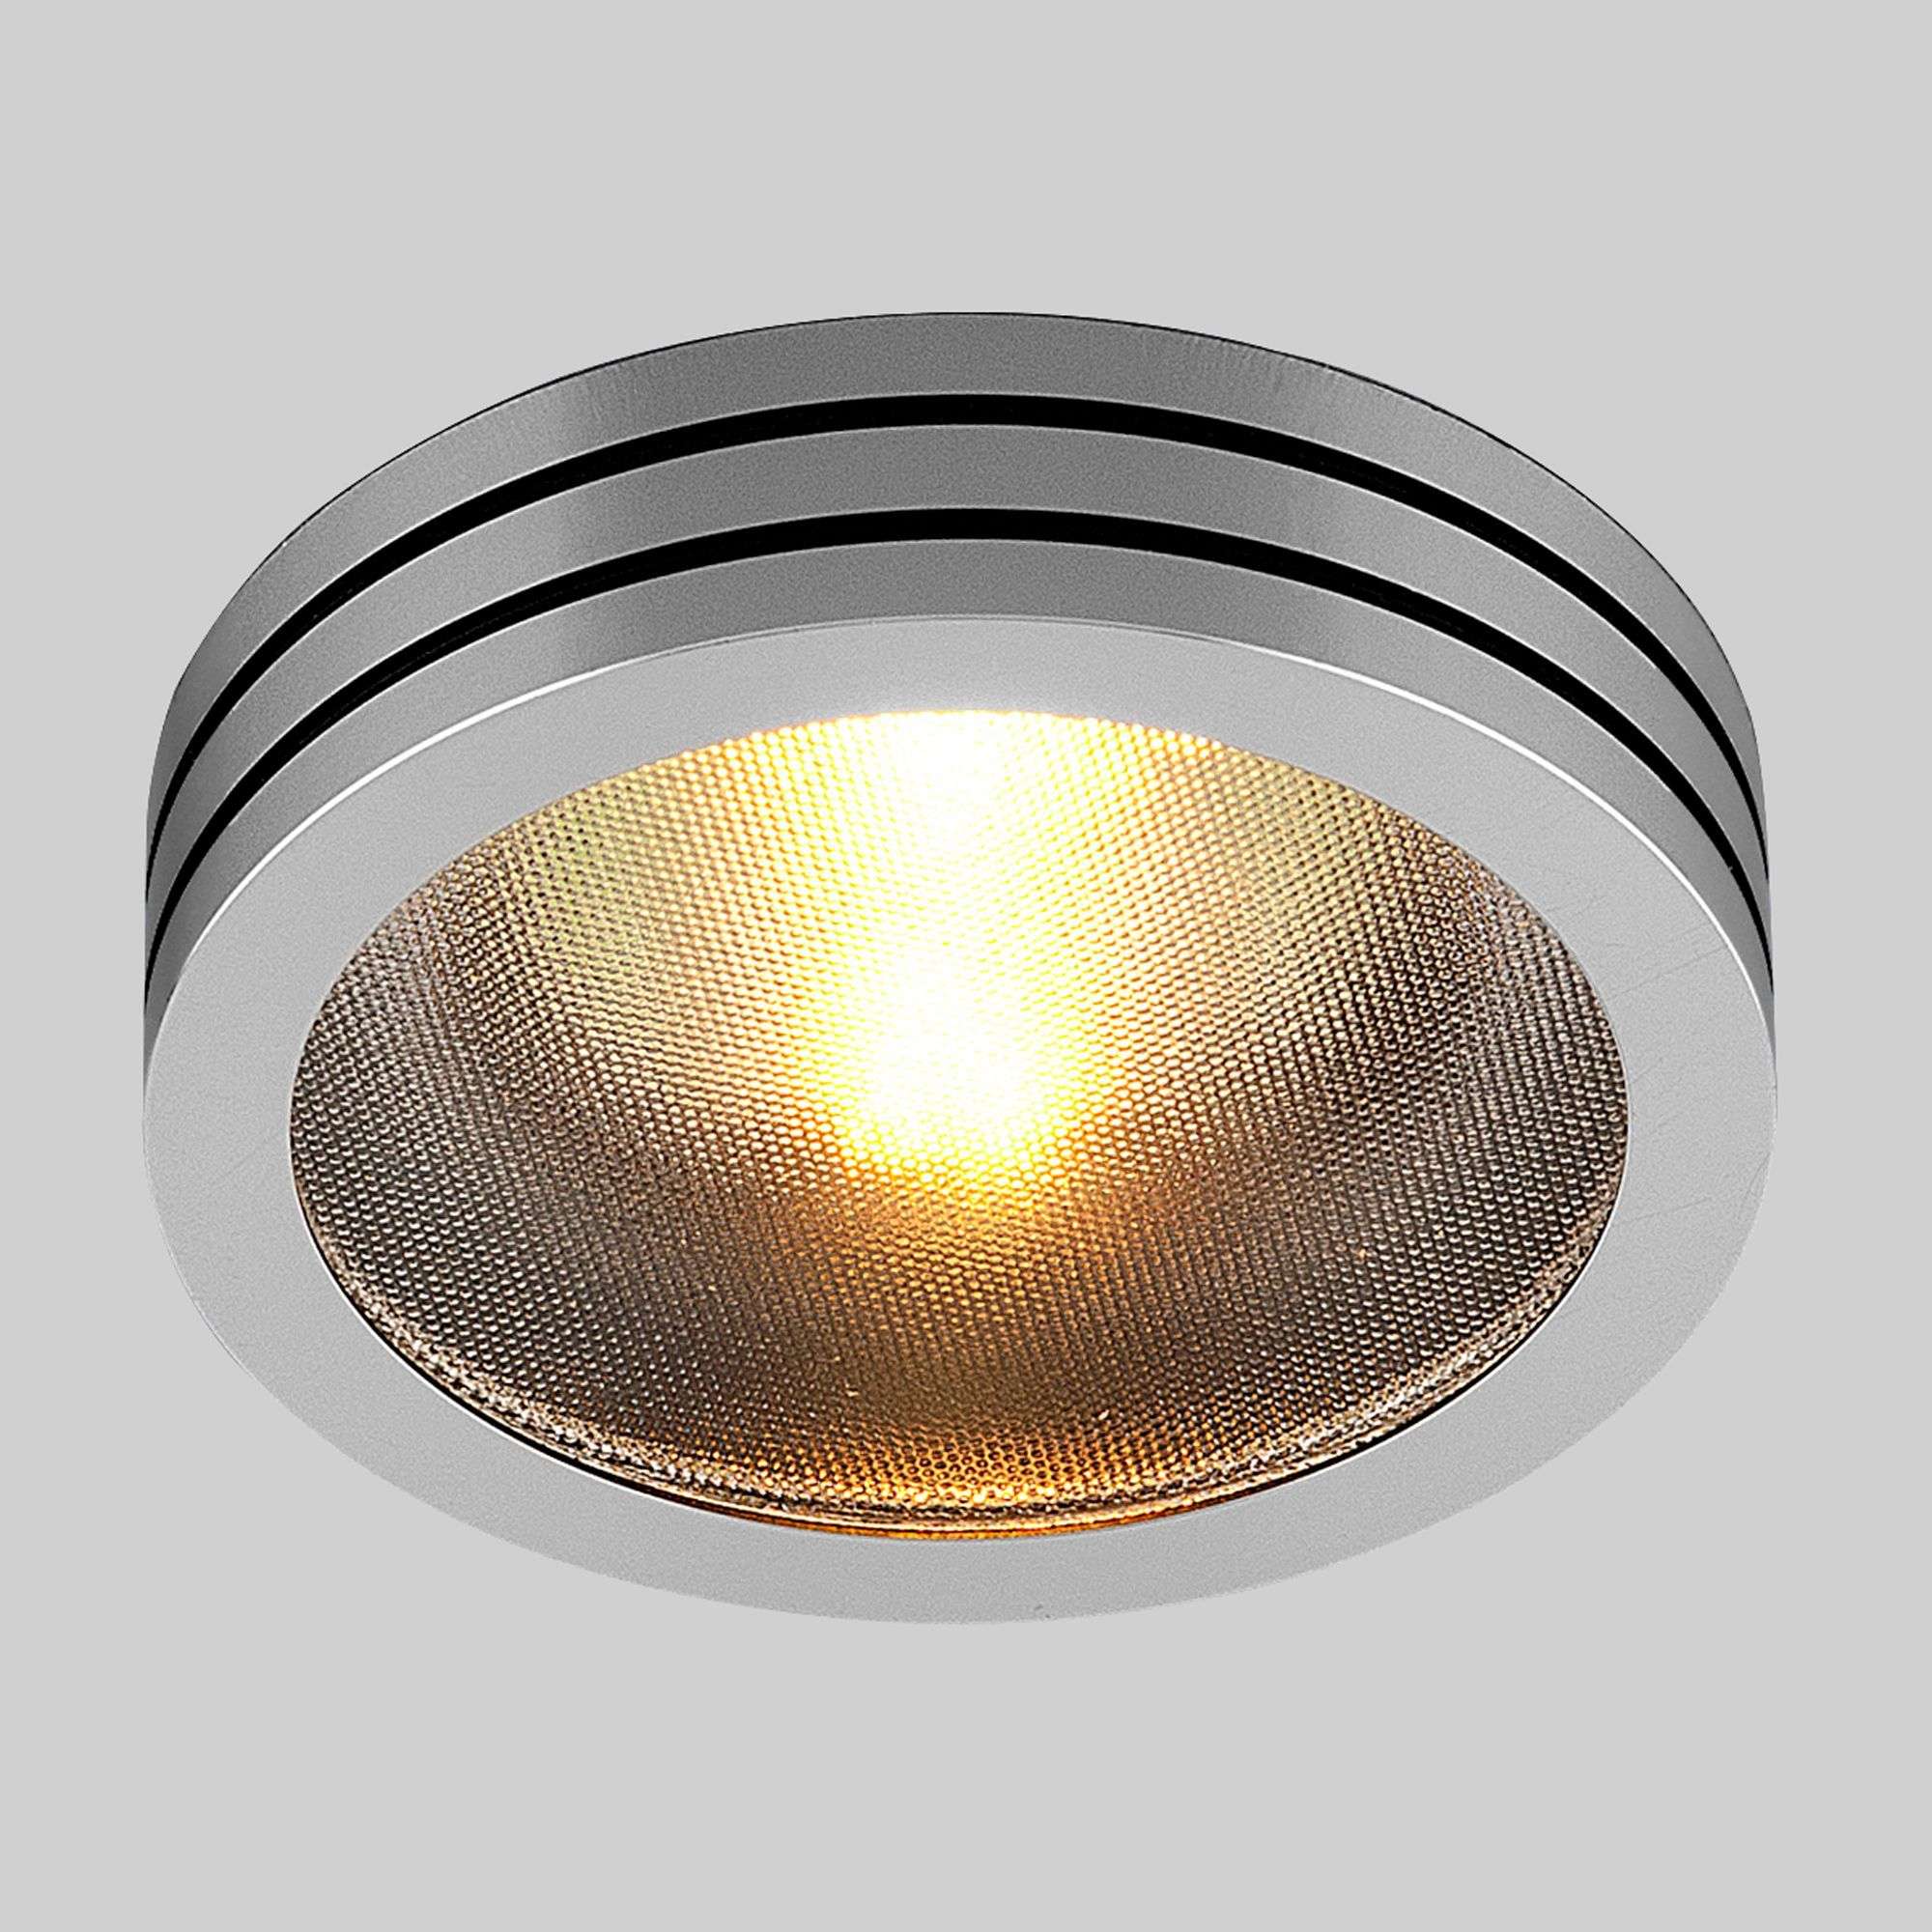 Точечный светильник из алюминия 5153 MR16 CH/BK хром/черный. Фото 1